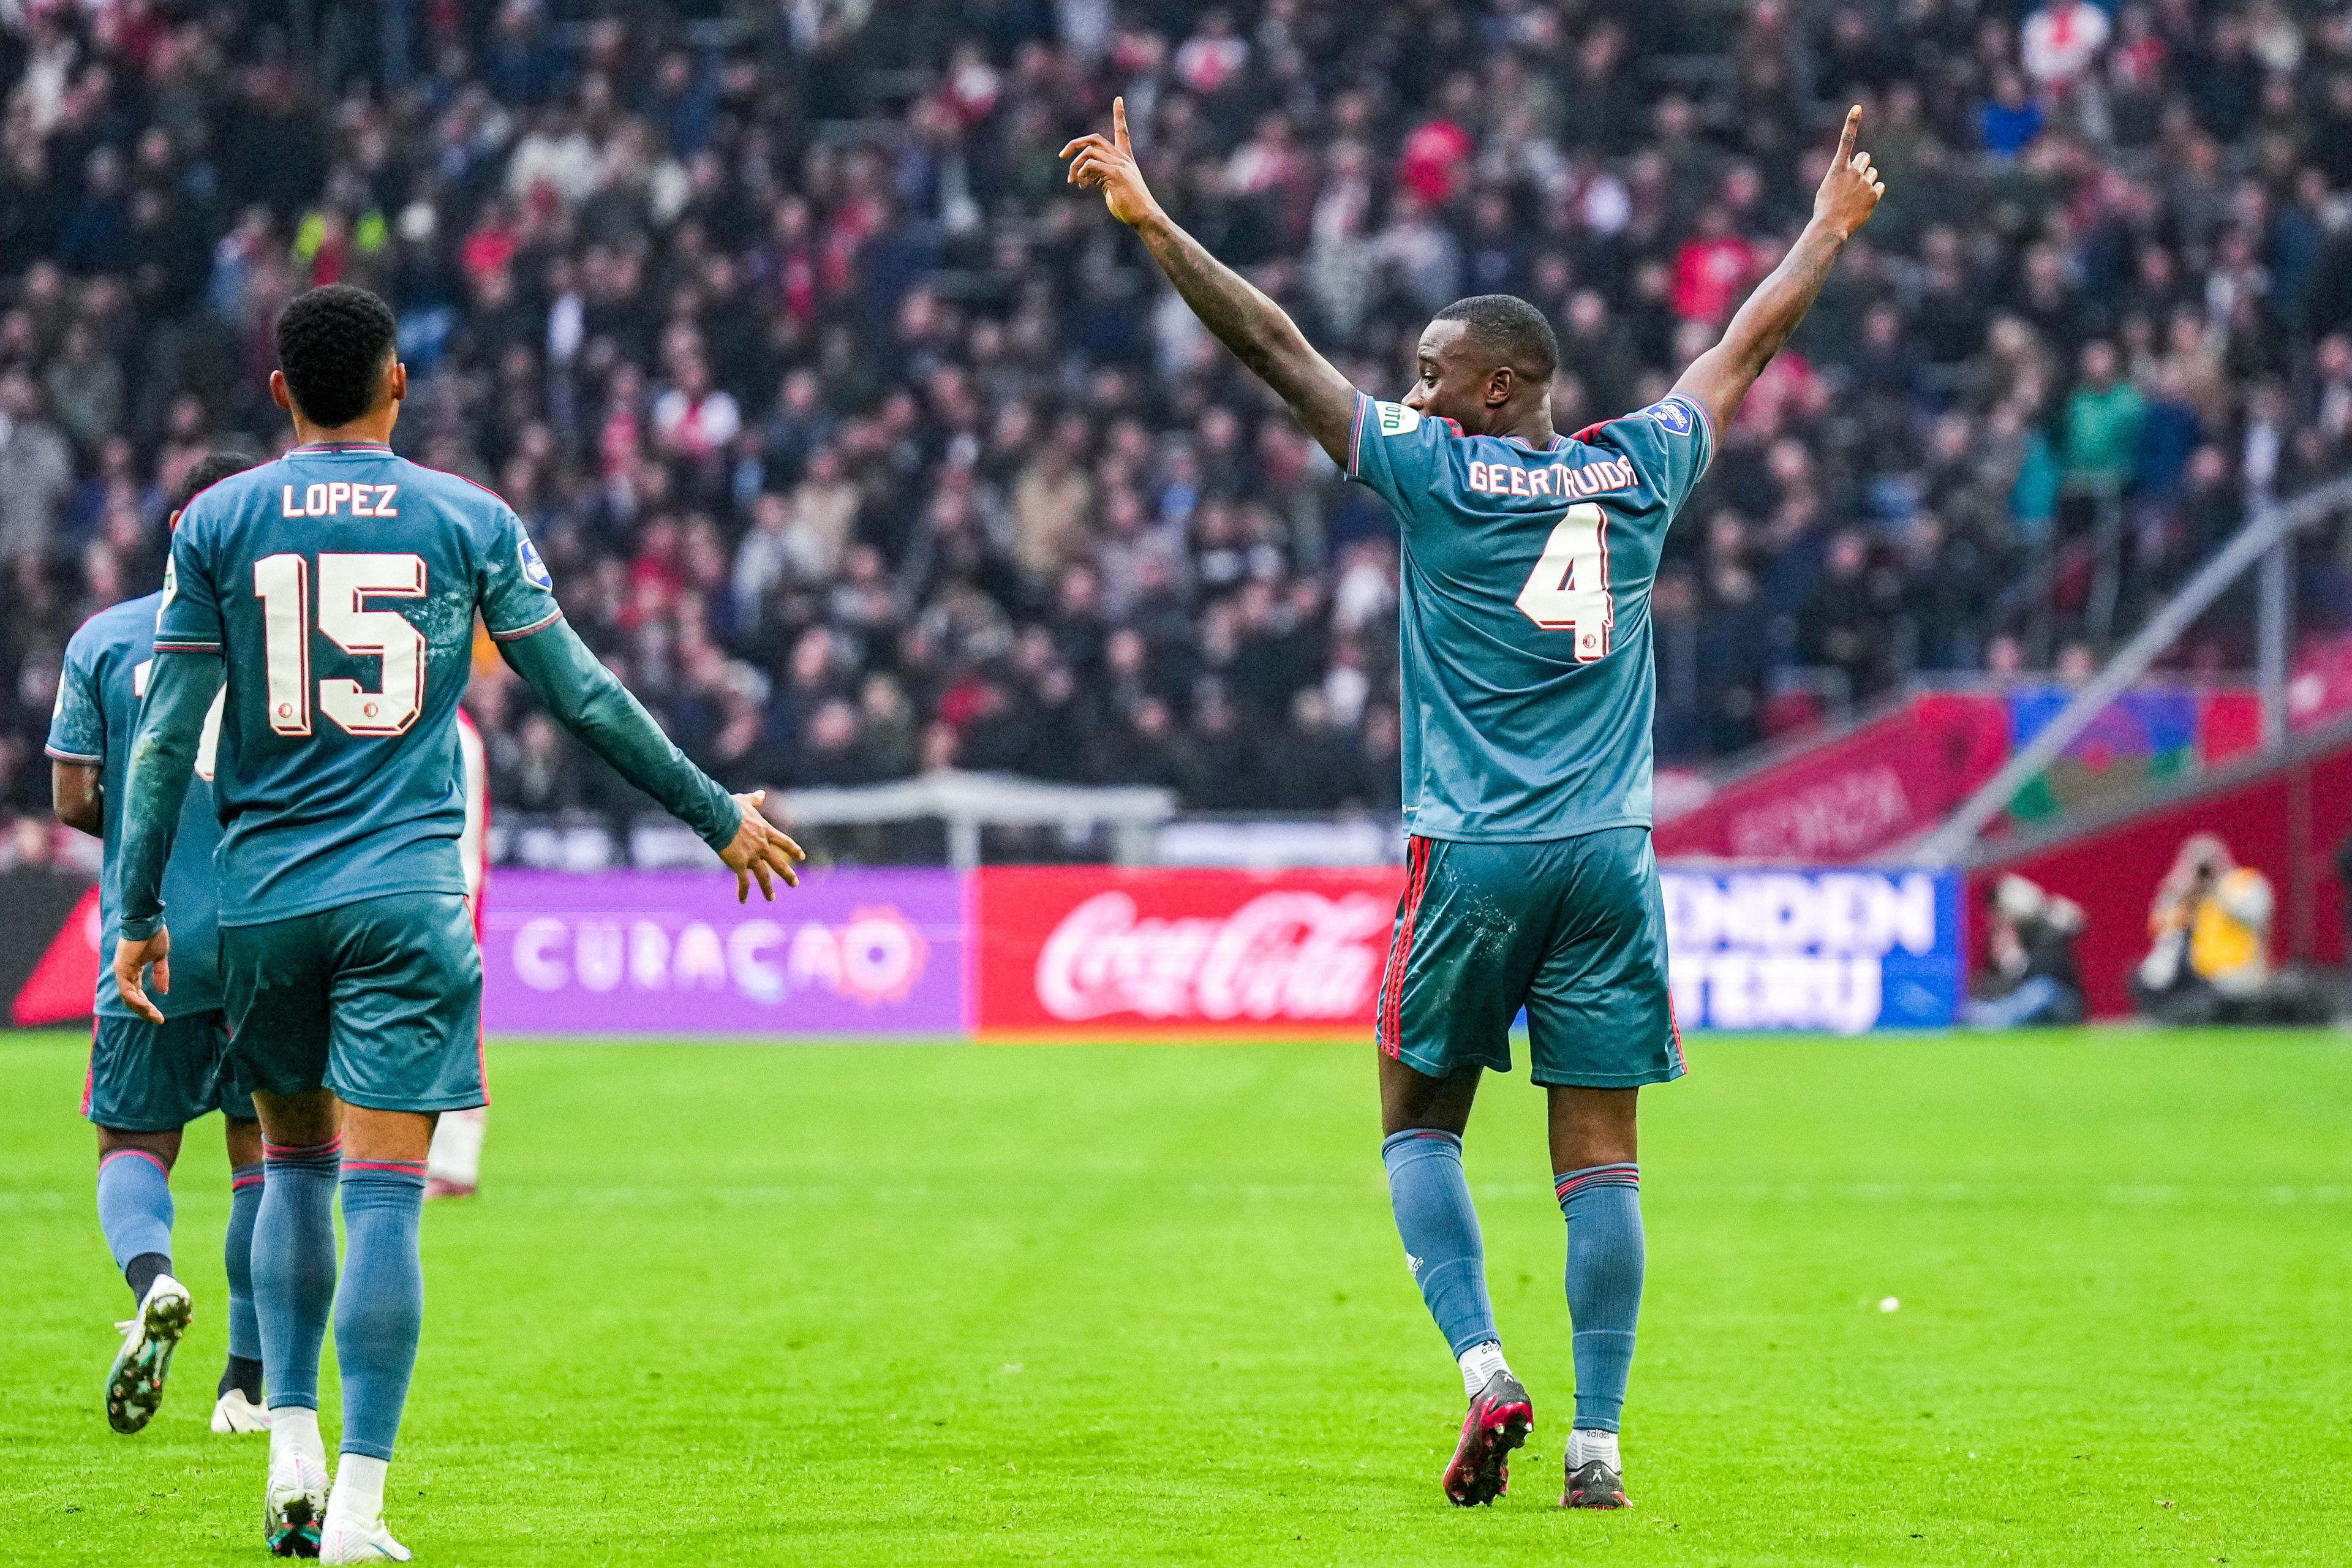 Ajax - Feyenoord • 2 - 3 [FT]